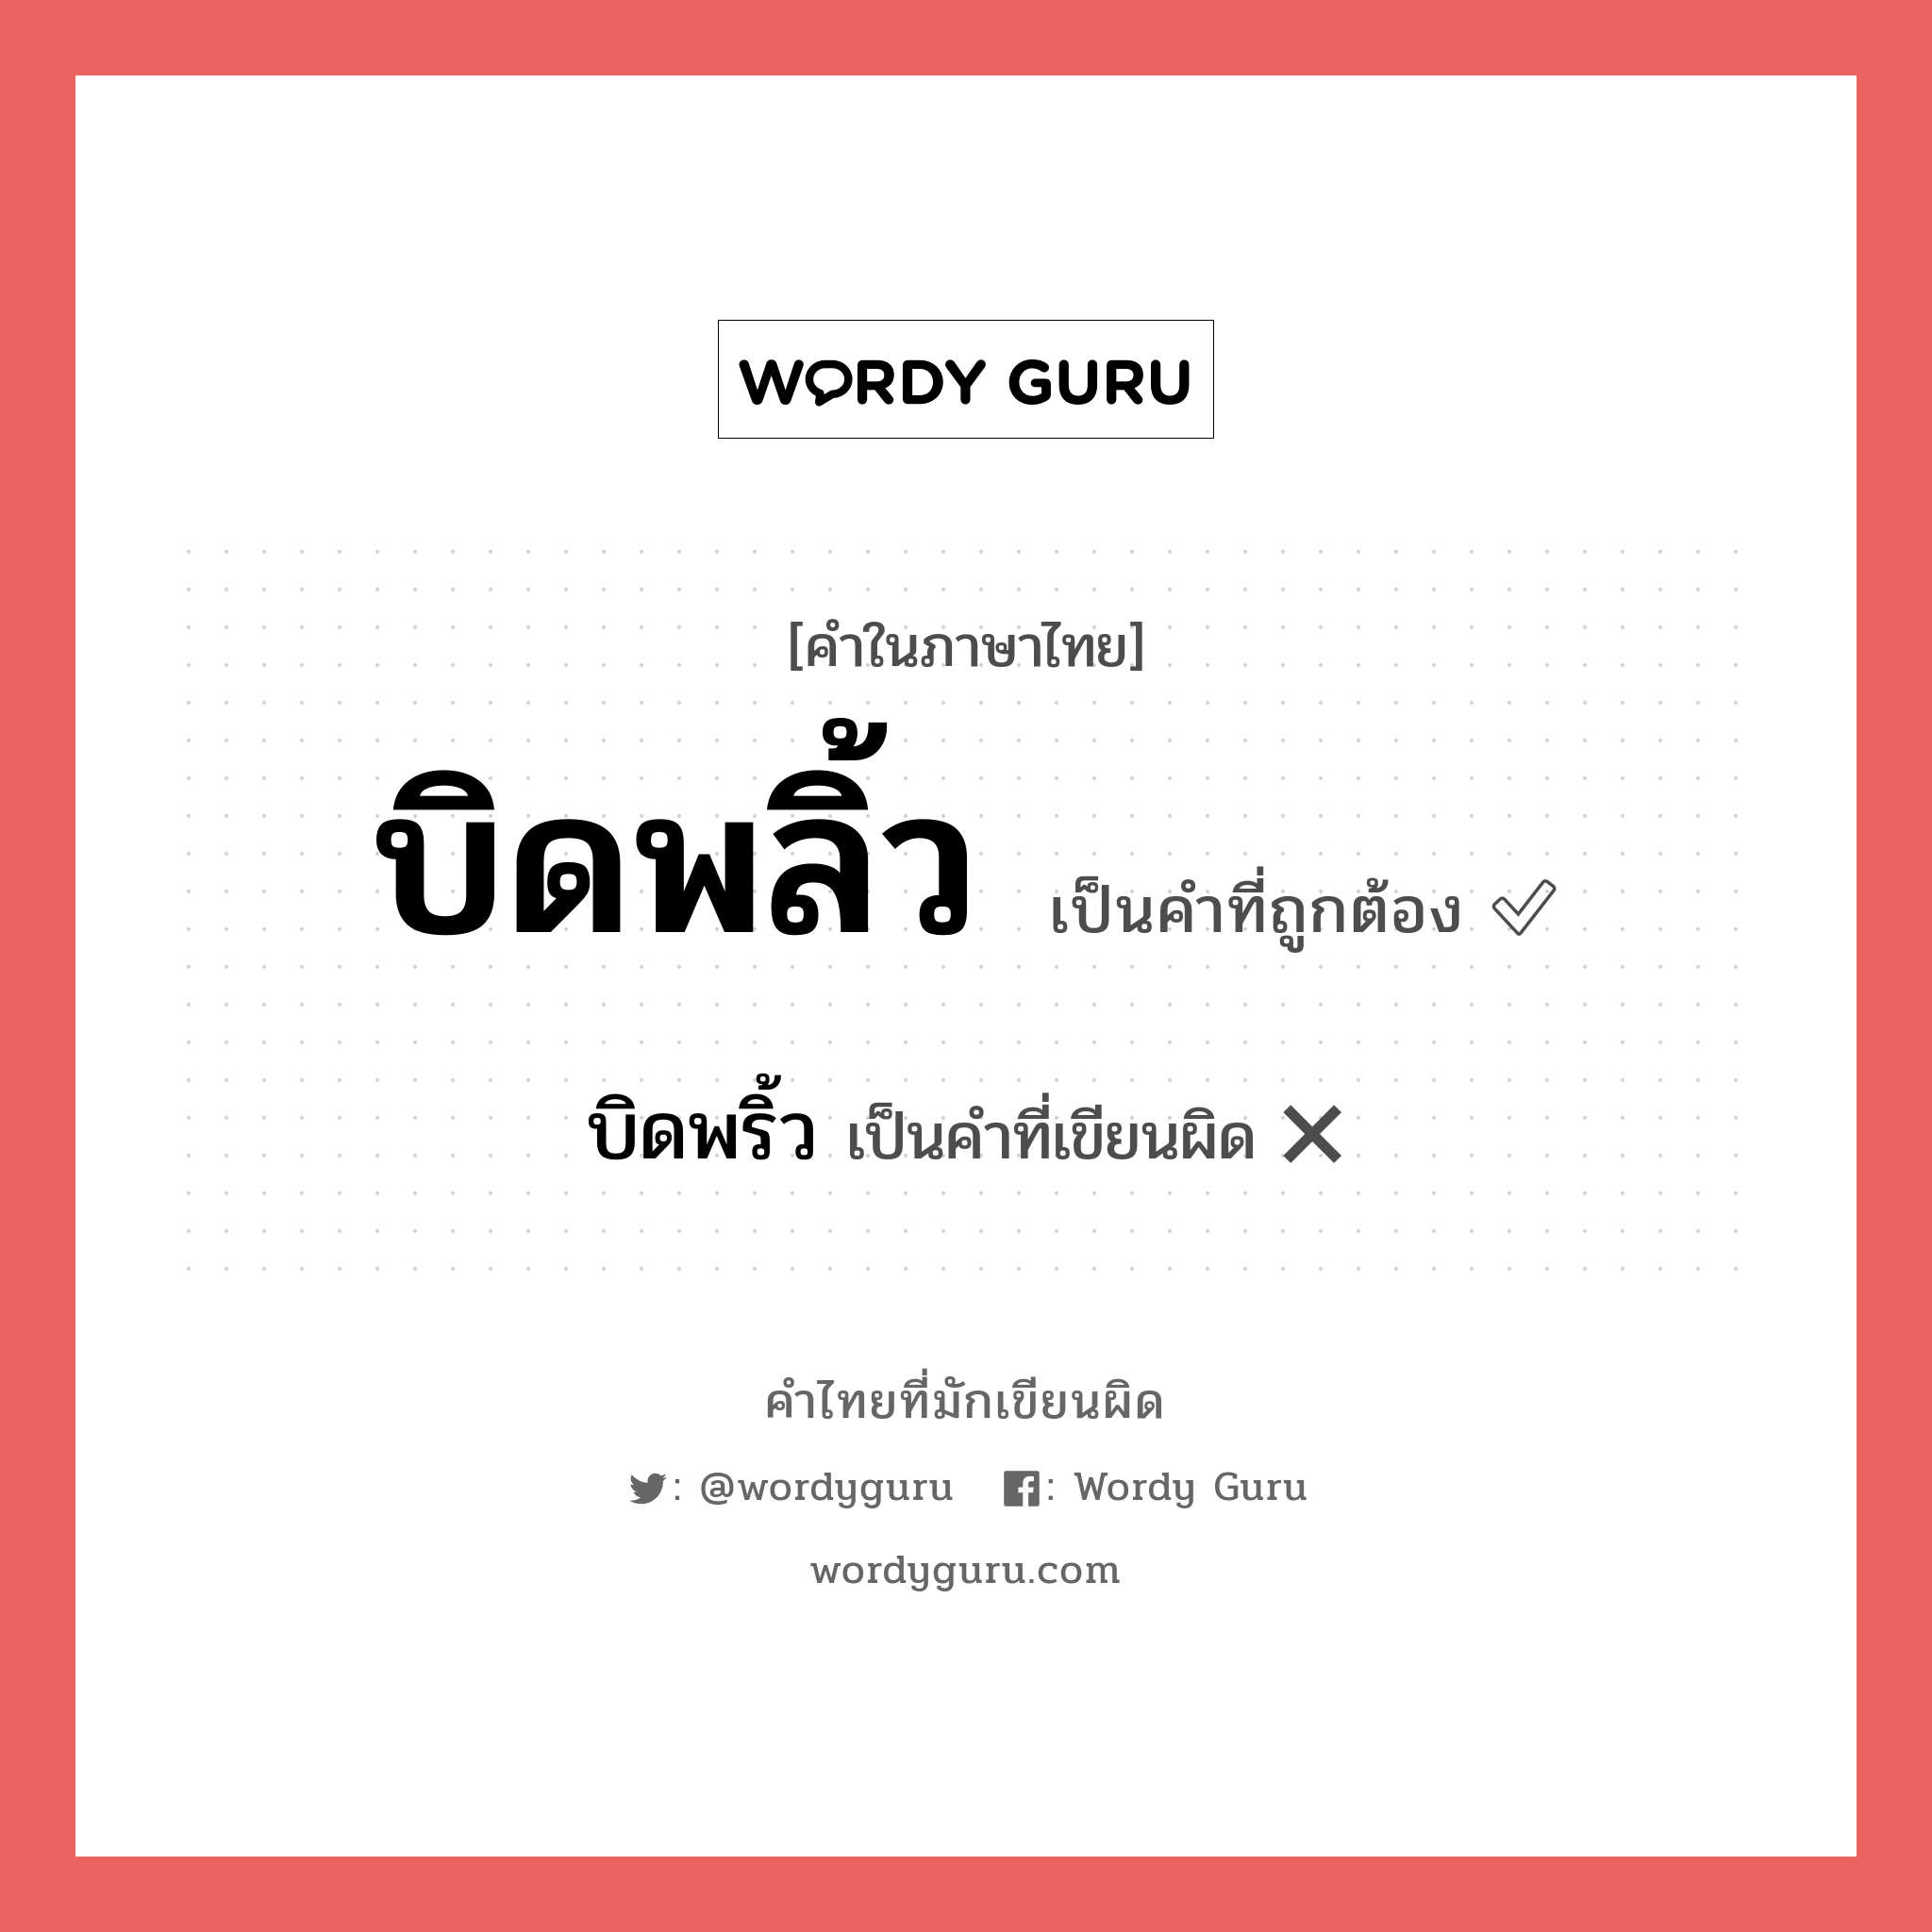 บิดพริ้ว หรือ บิดพลิ้ว คำไหนเขียนถูก?, คำในภาษาไทยที่มักเขียนผิด บิดพริ้ว คำที่ผิด ❌ บิดพลิ้ว